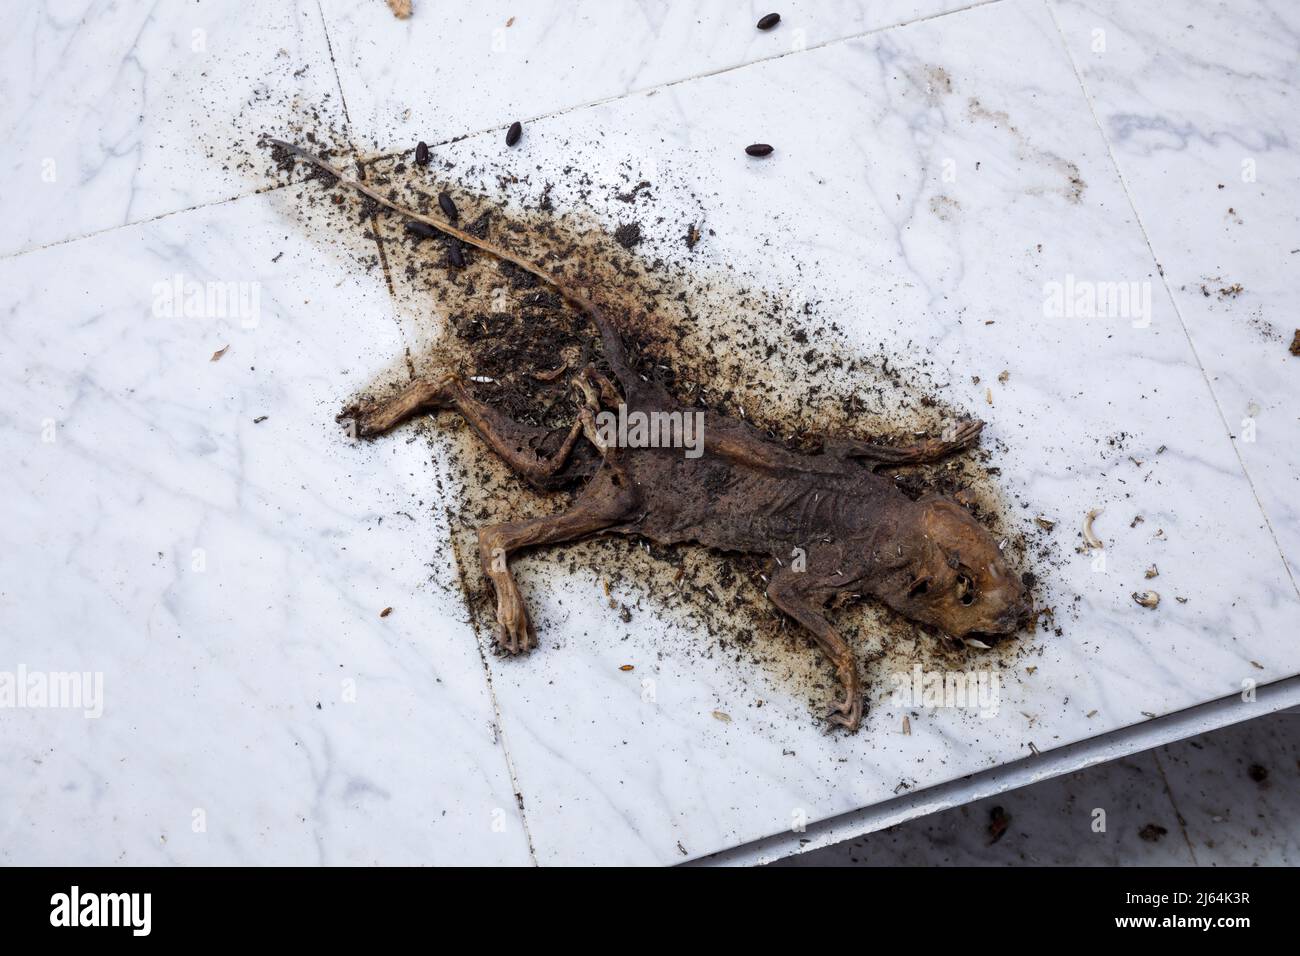 Uno scoiattolo sciuridae mummificato morto all'interno di una casa abbandonata. Foto Stock